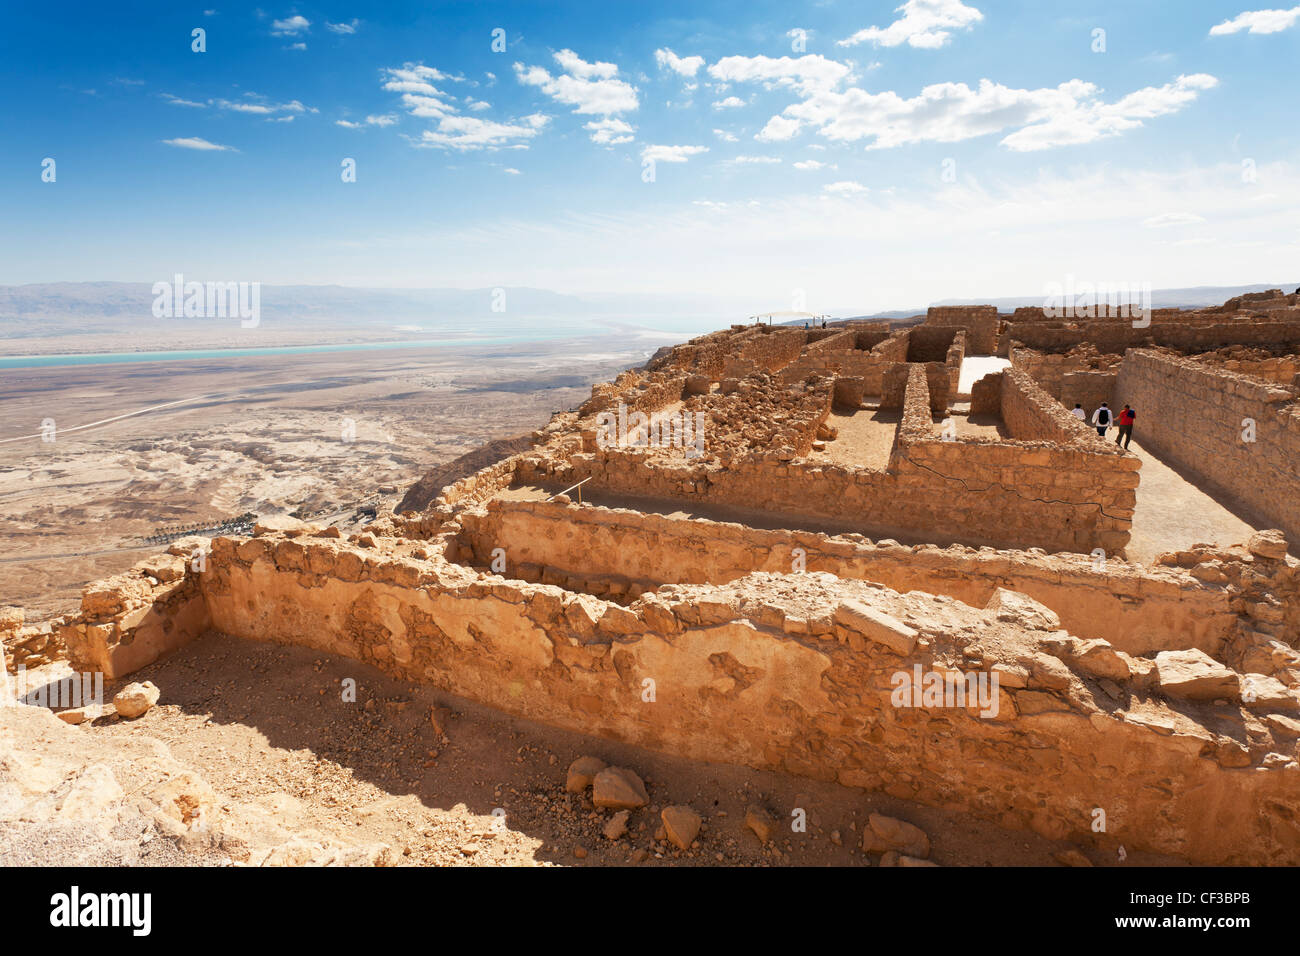 Israel, la fortaleza de Masada, los almacenes y el desierto circundante Foto de stock